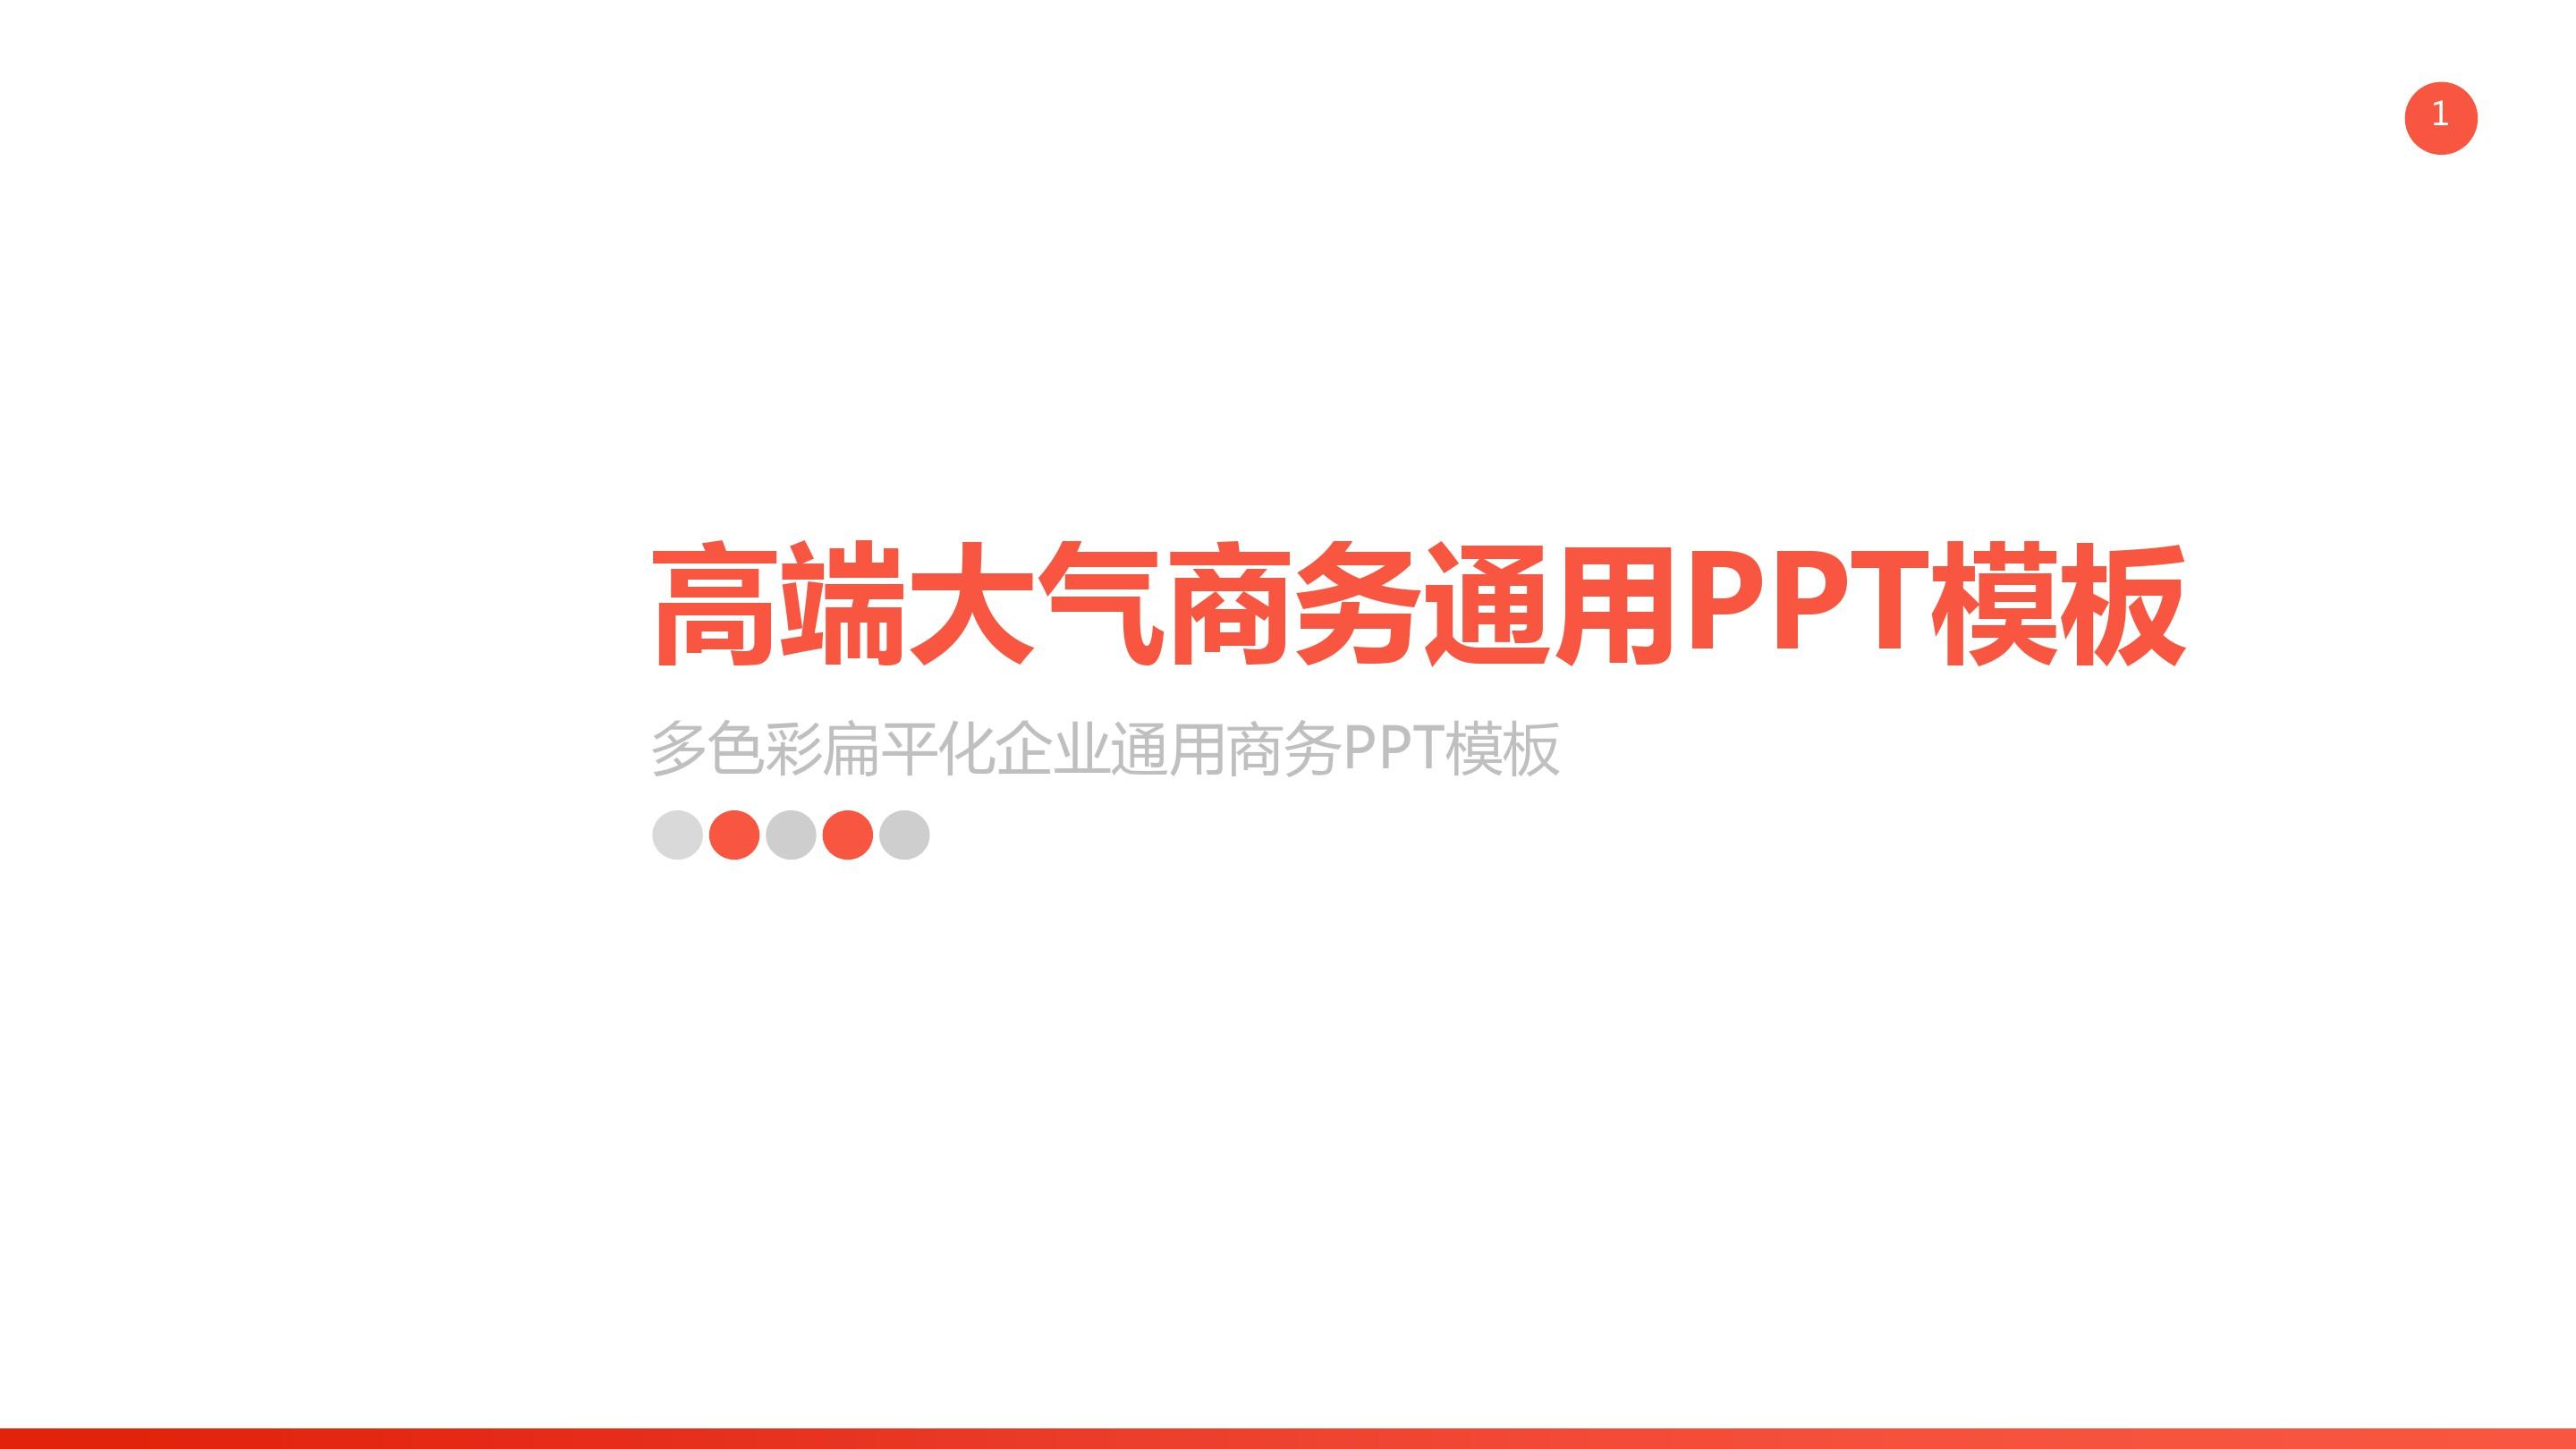 高端大气企业团队宣传总结汇报产品销售PPT模板